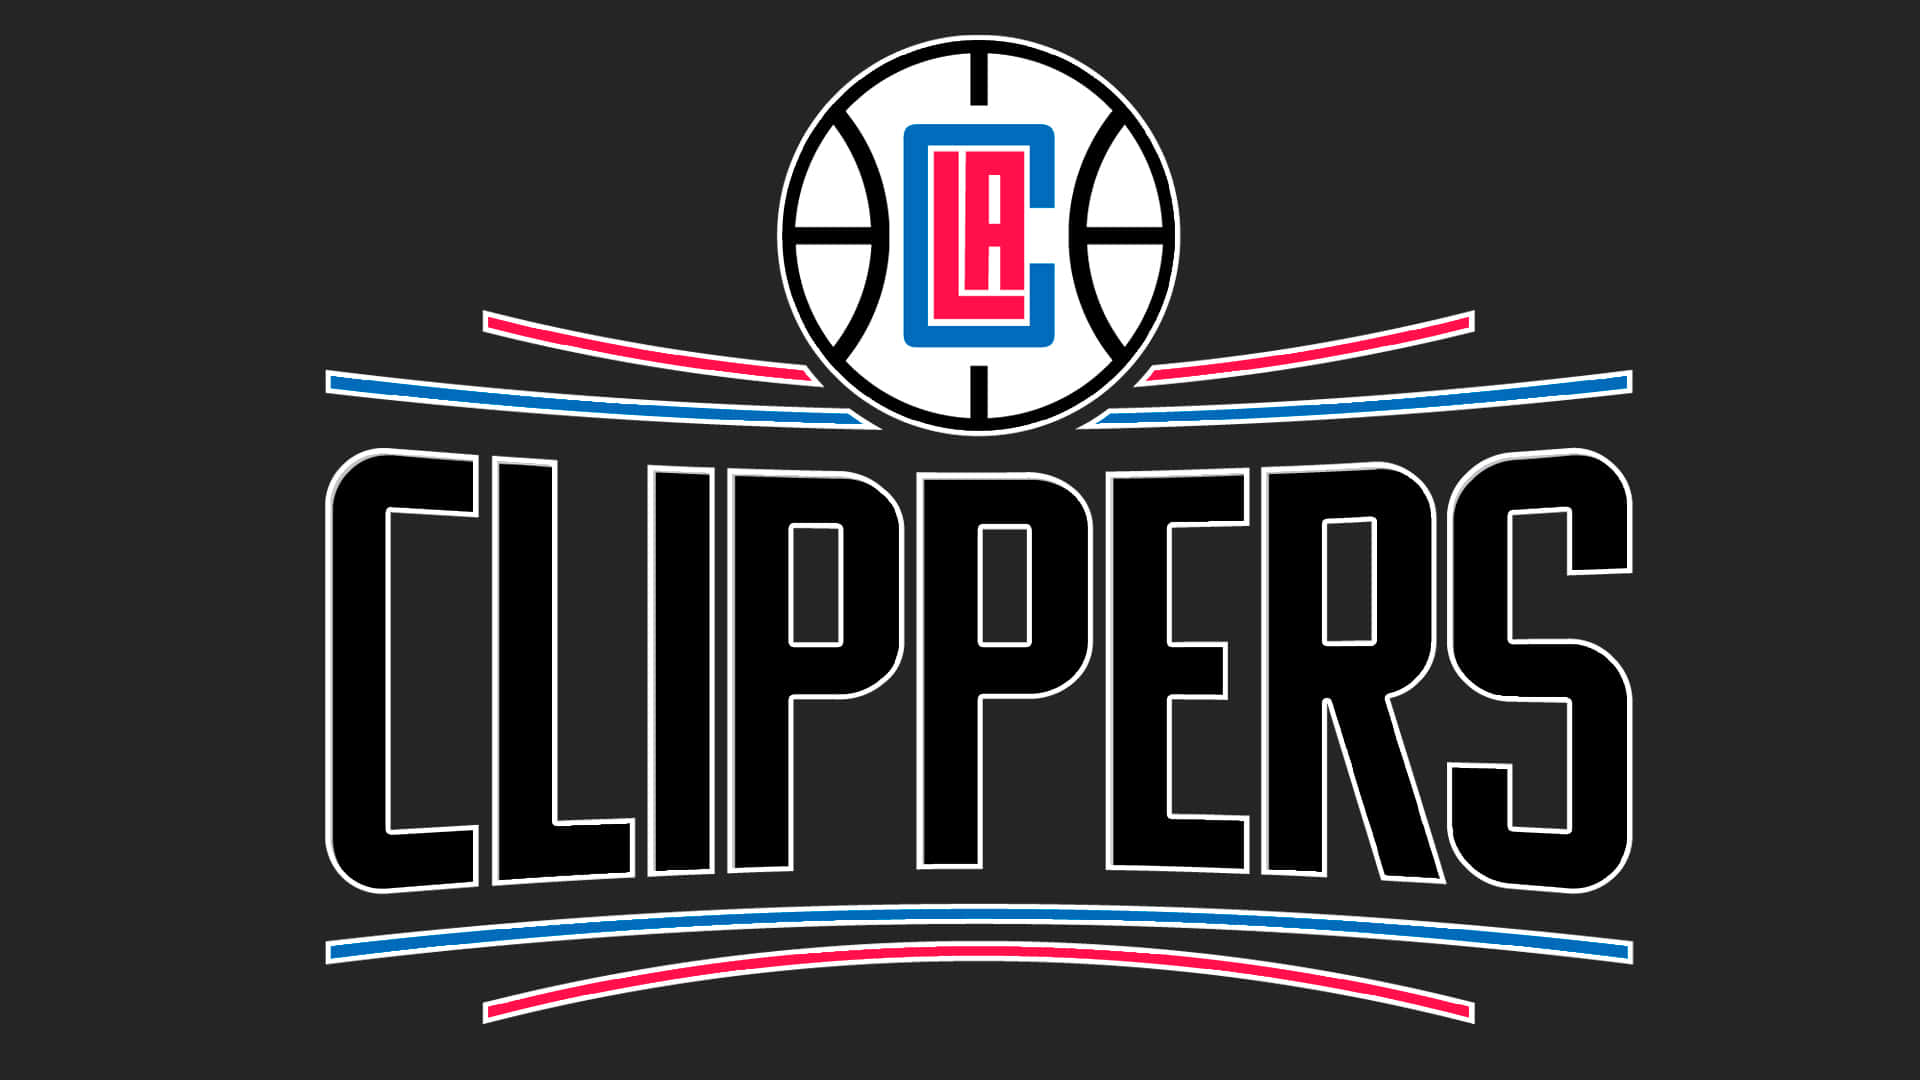 Ilustraciónsencilla Del Logotipo Del Equipo De Baloncesto La Clippers Fondo de pantalla